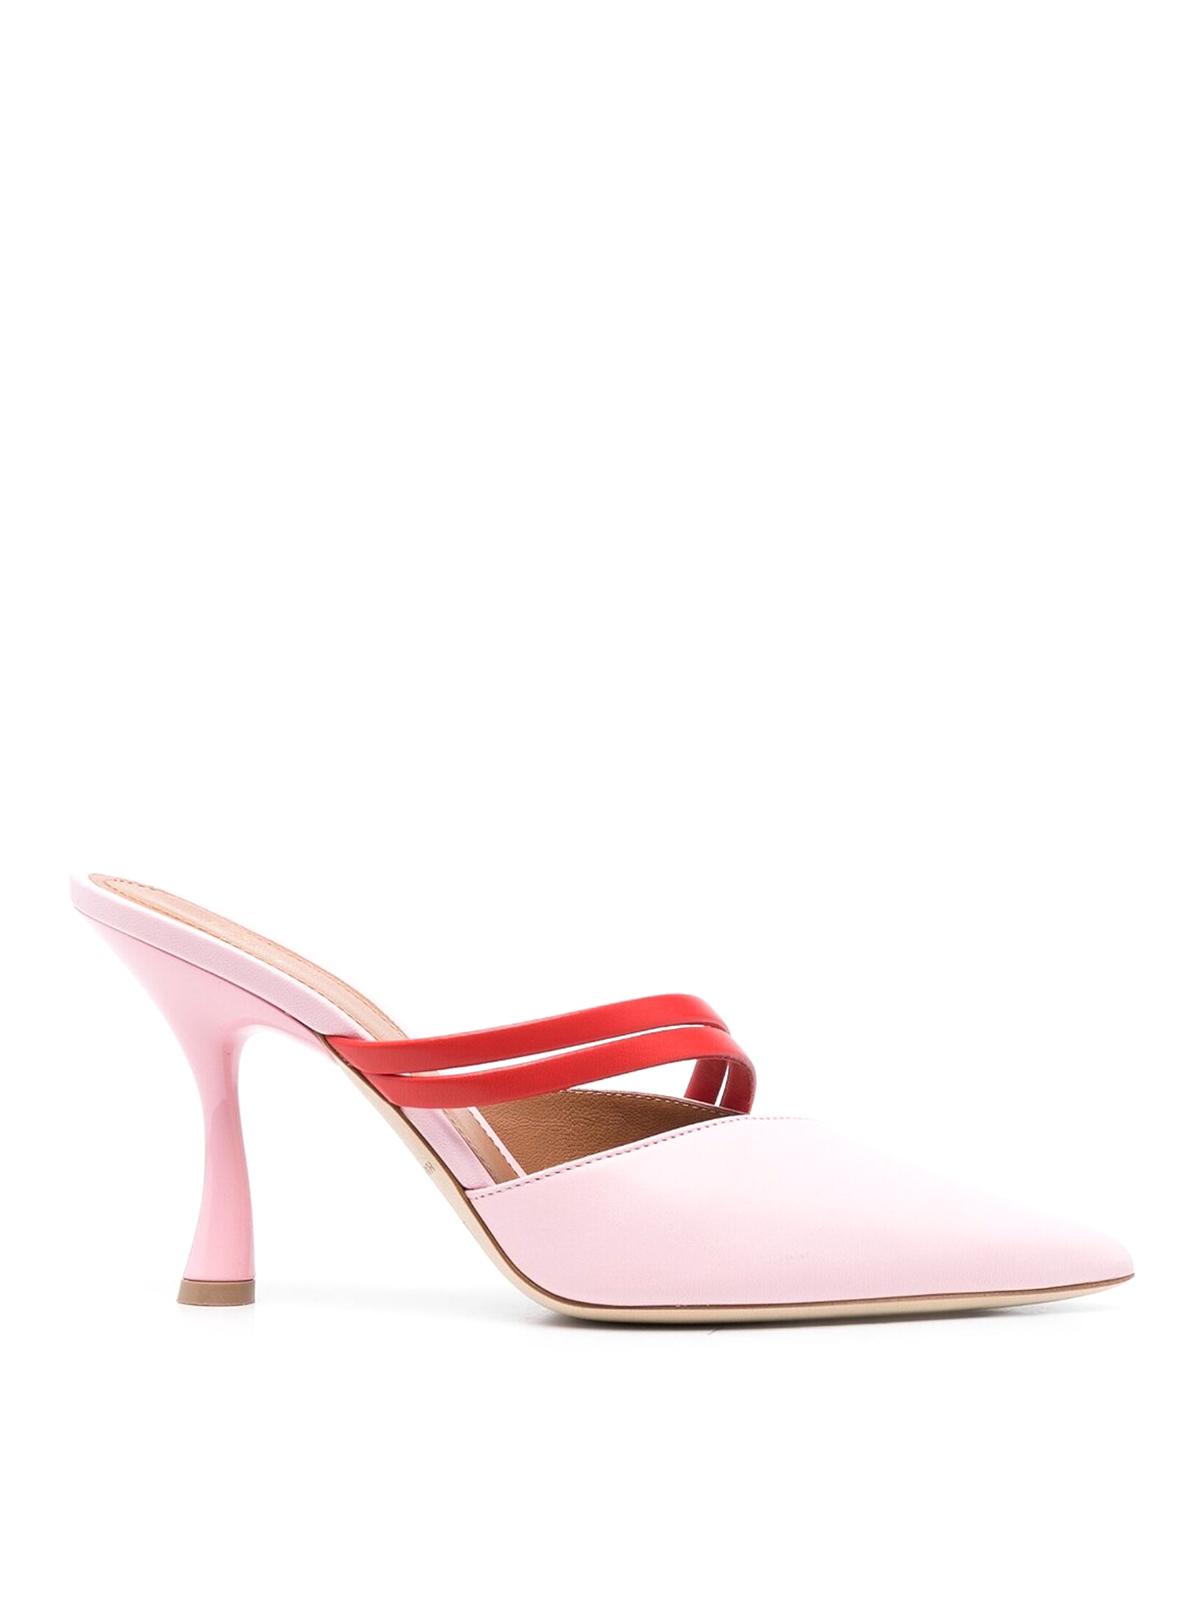 Shop Malone Souliers Zapatos De Salón - Tia 90 In Pink